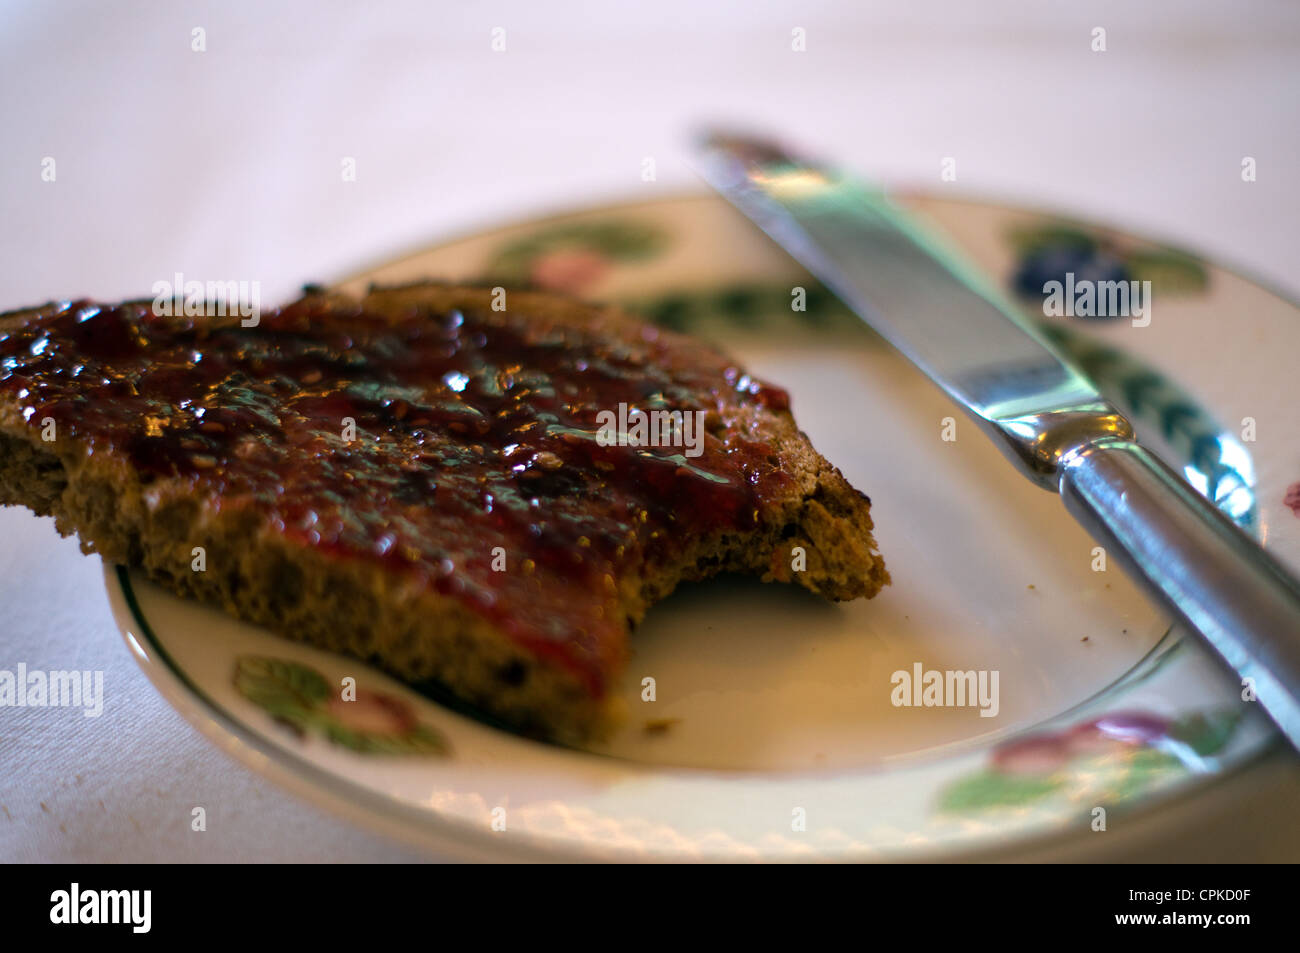 Eine Scheibe Brot Kornspeicher erstickt in Erdbeer-Gelee (Marmelade) mit einem Biss mit einem Messer auf einen Teller herausgenommen Stockfoto